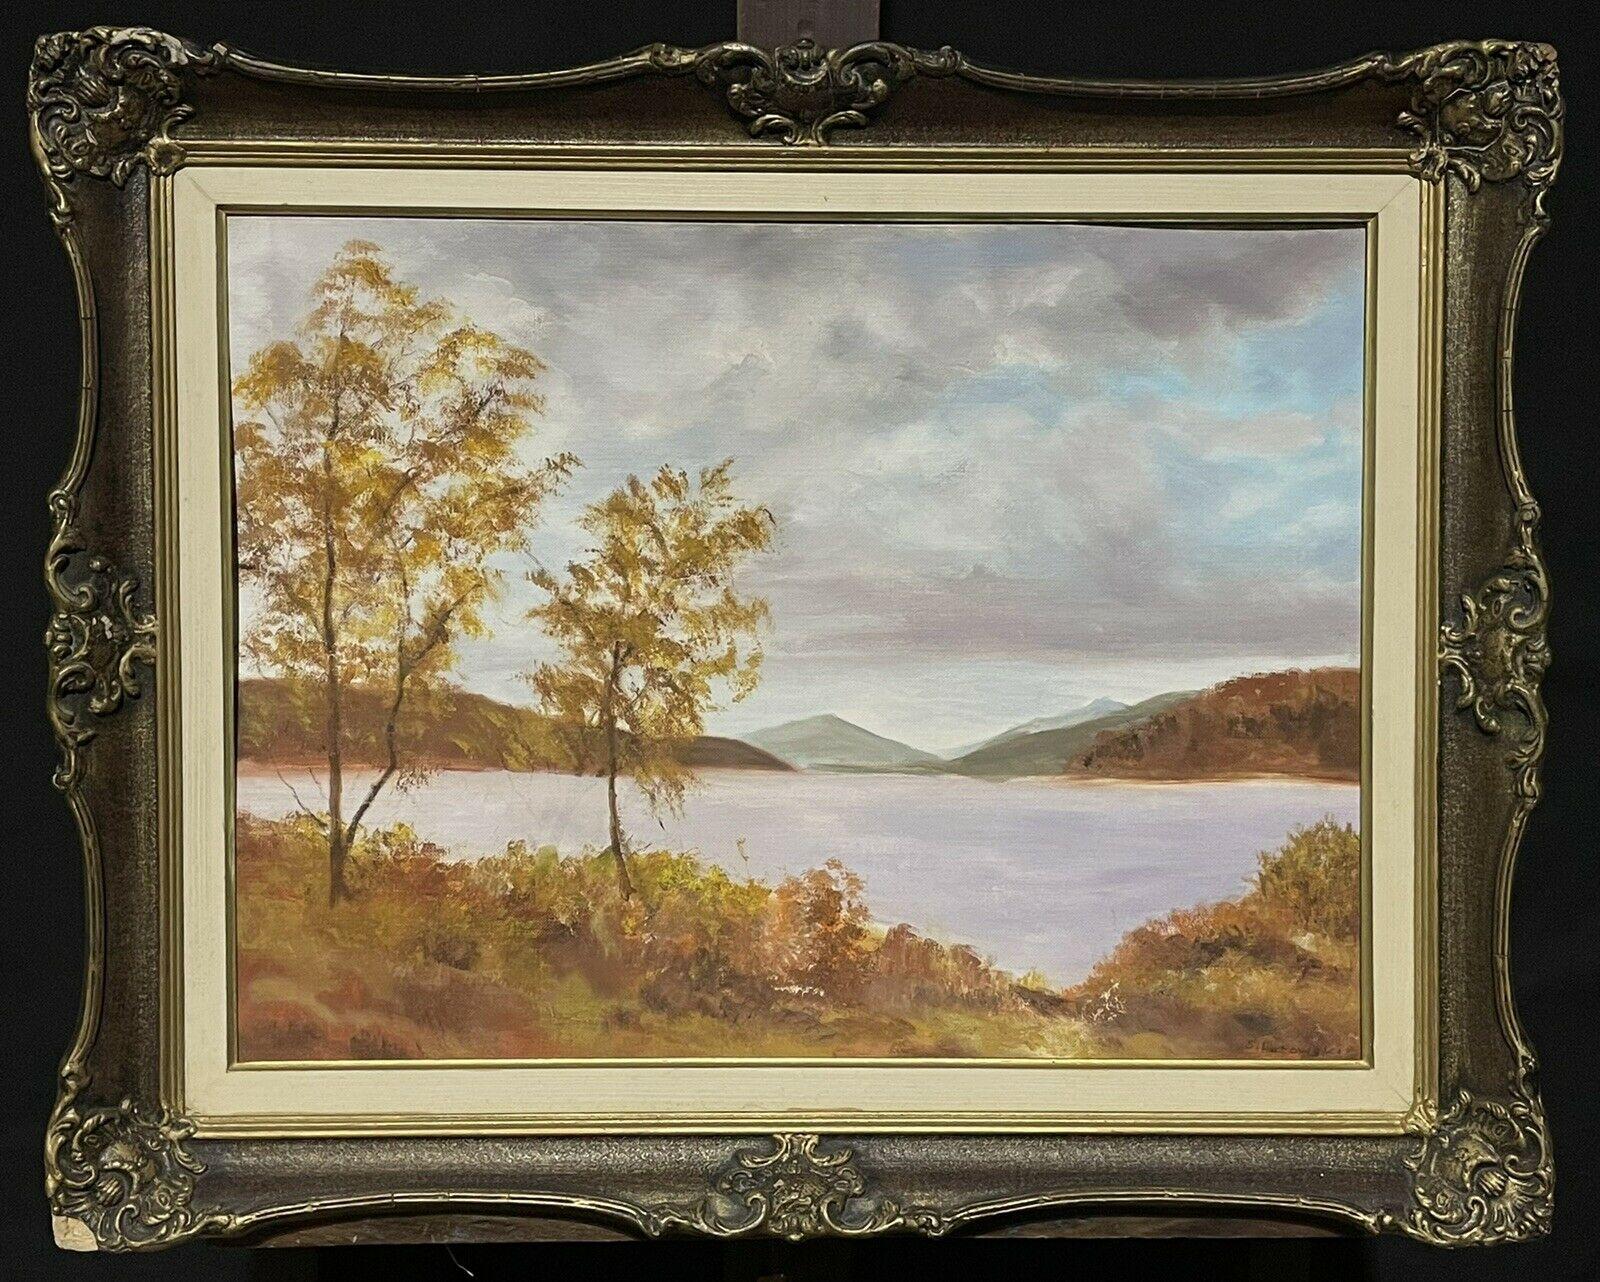 Loch Garry, Scotland Landscape Painting - Vintage Scottish Highland Loch Scene, Loch Garry Inverness, signed oil